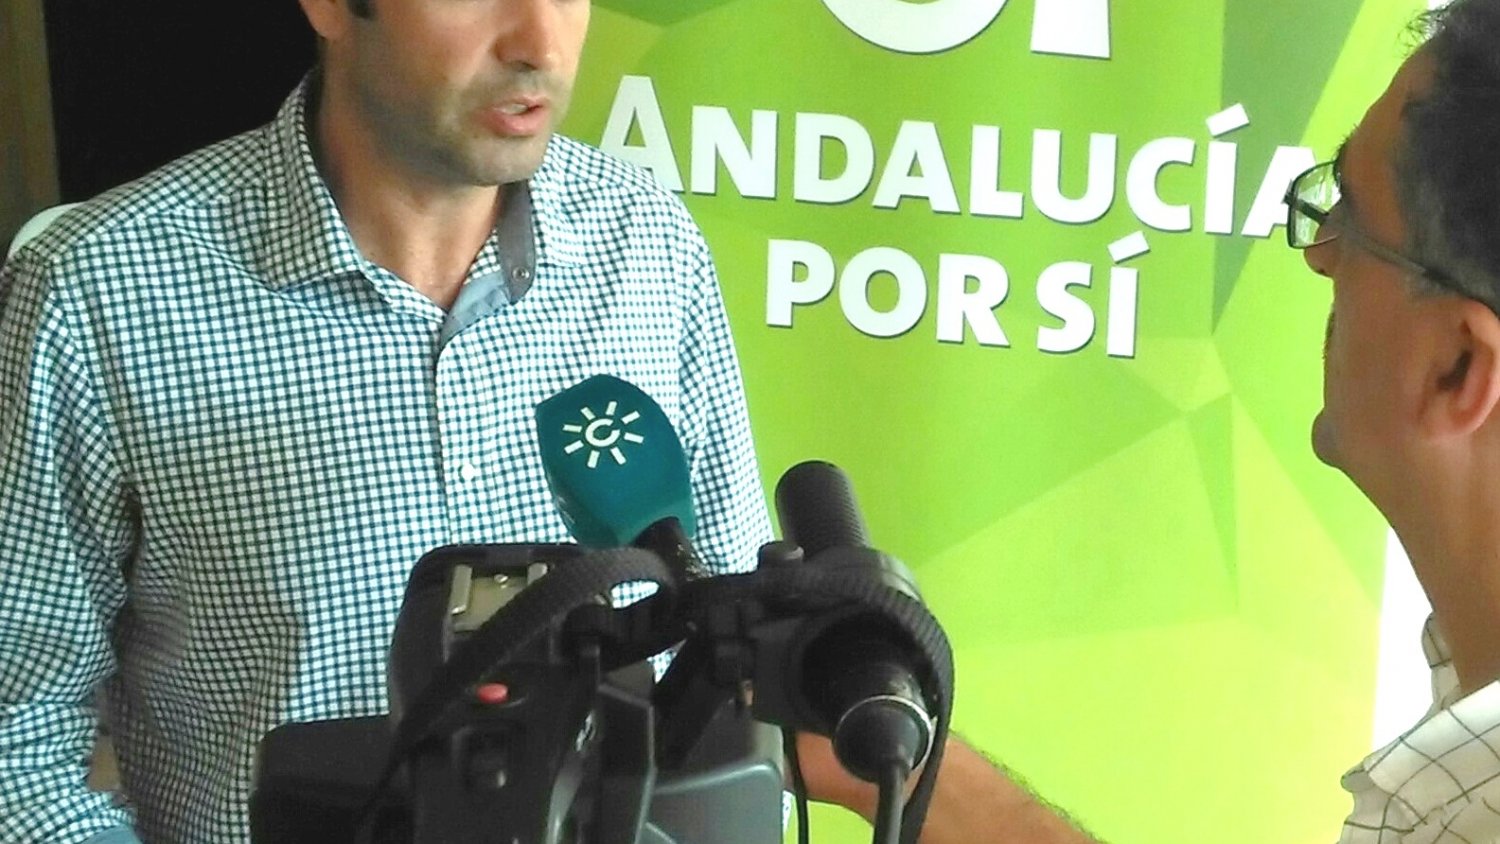 AxSí: “Ningún partido tiene el funcionamiento participativo, democrático y transparente de Andalucía por Sí”